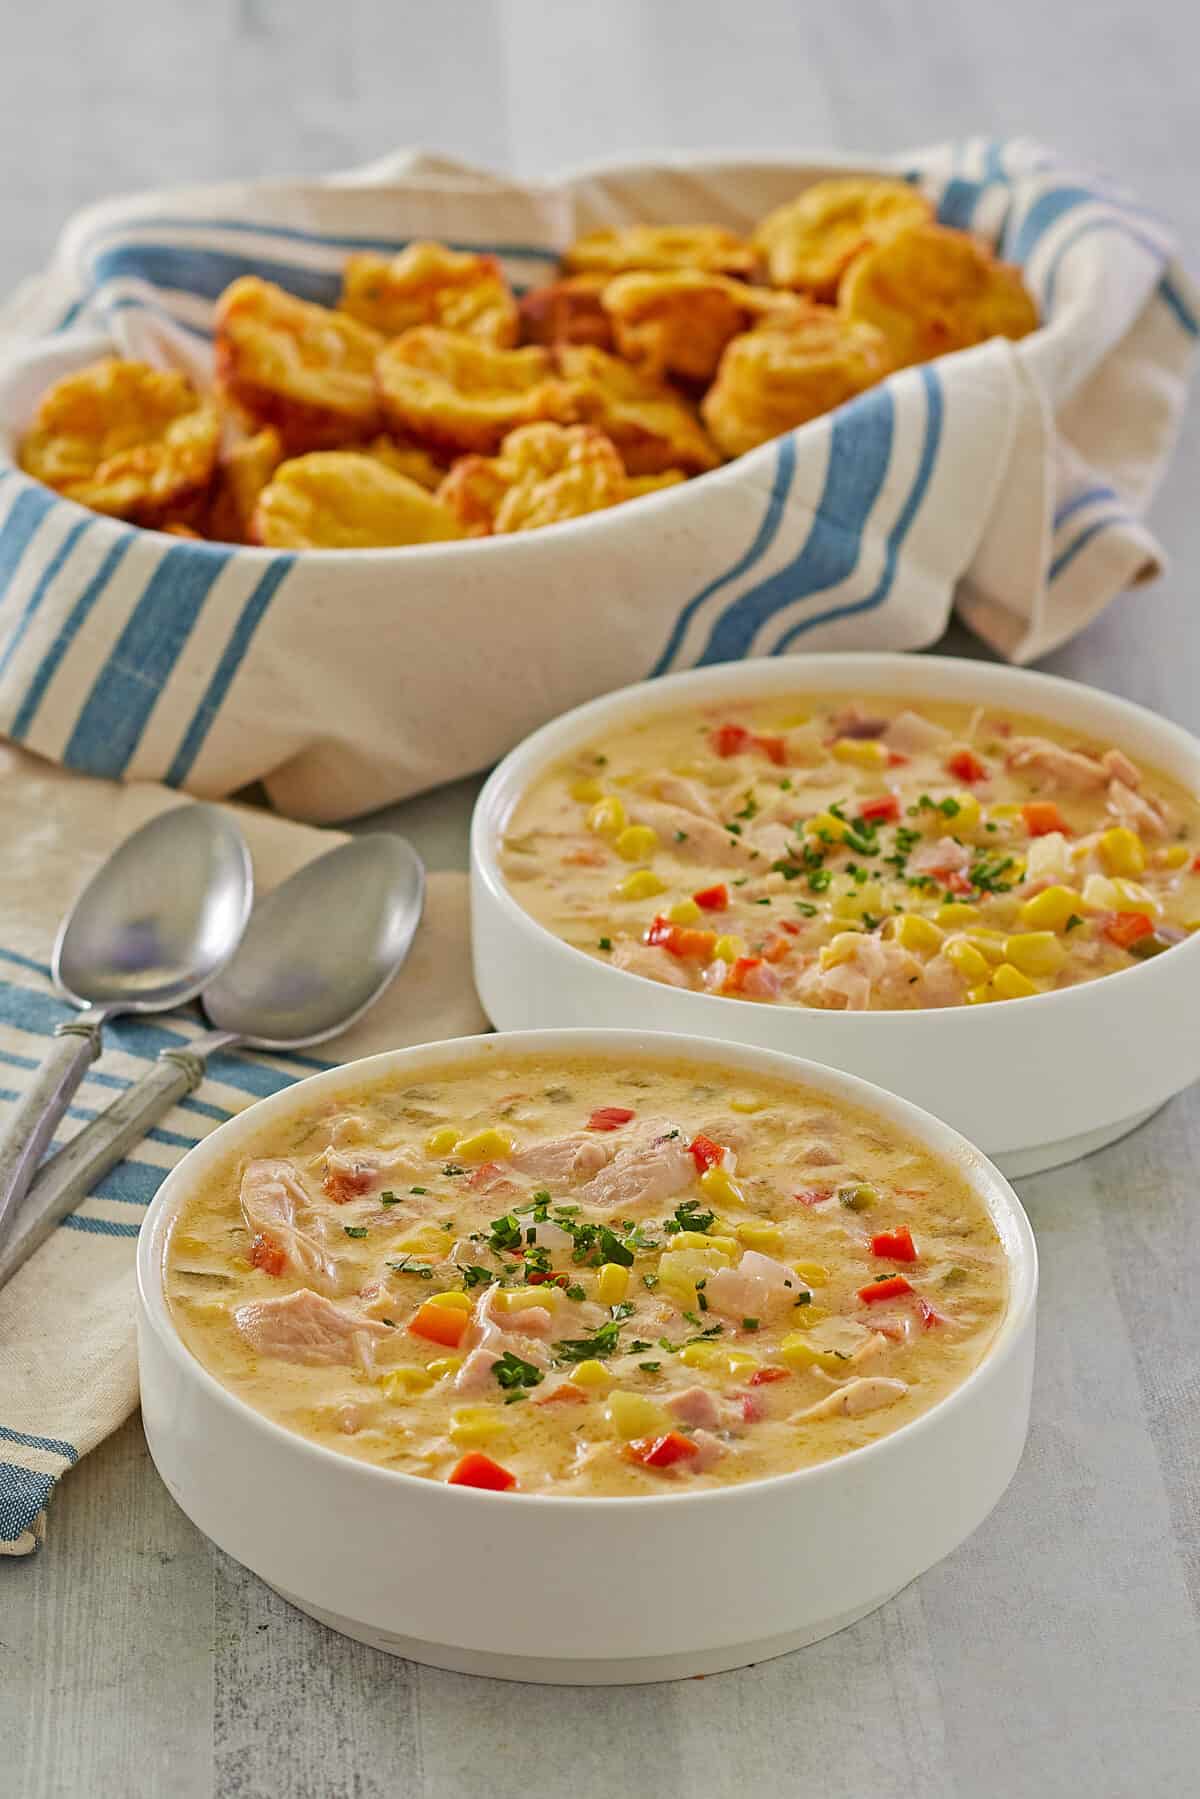 chicken corn chowder in serving bowls